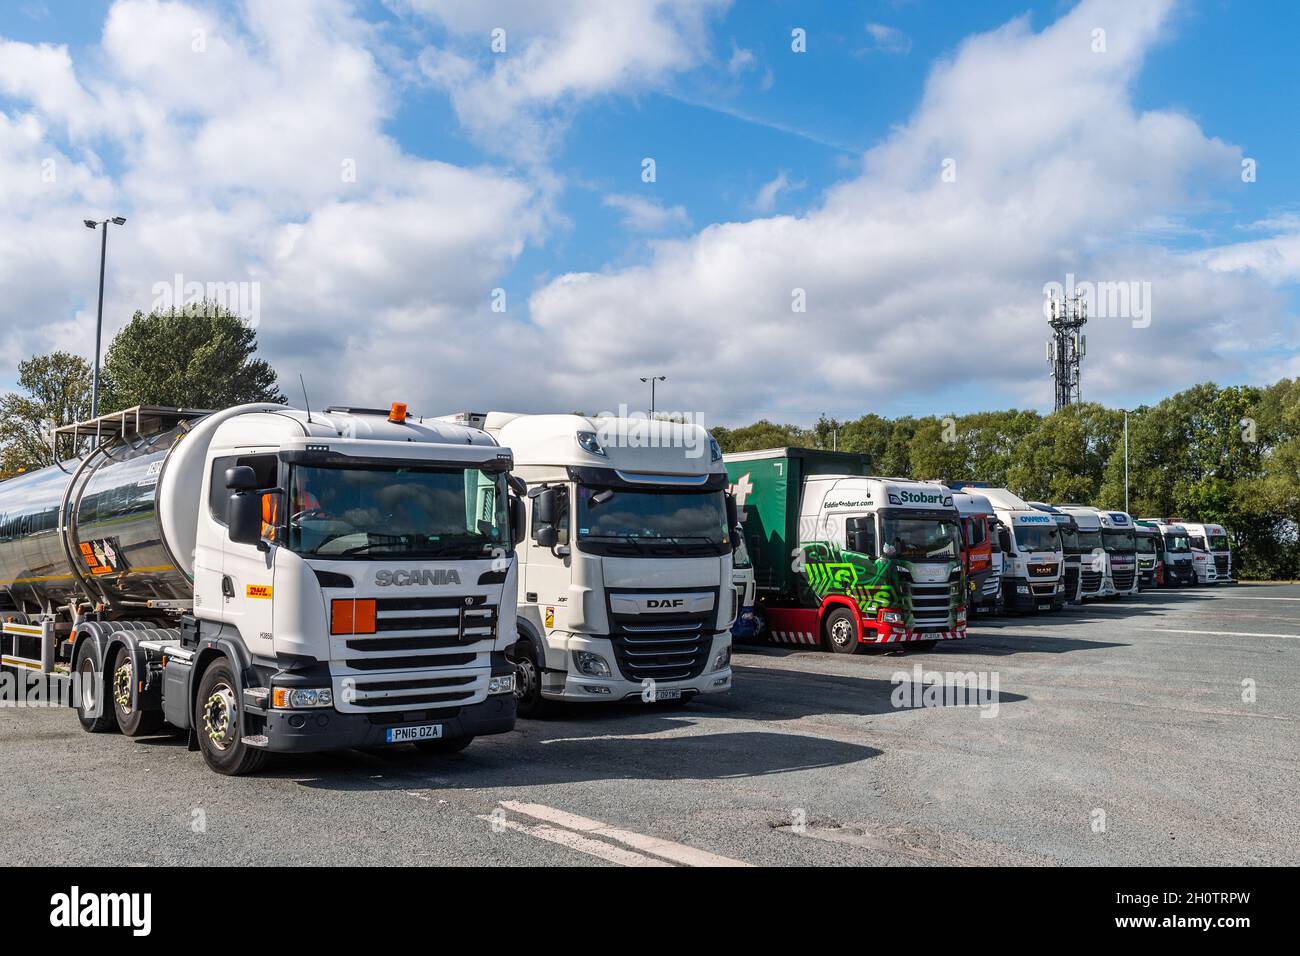 Stazione di servizio Burtonwood/fermata camion sull'autostrada M62 nel Regno Unito. Foto Stock